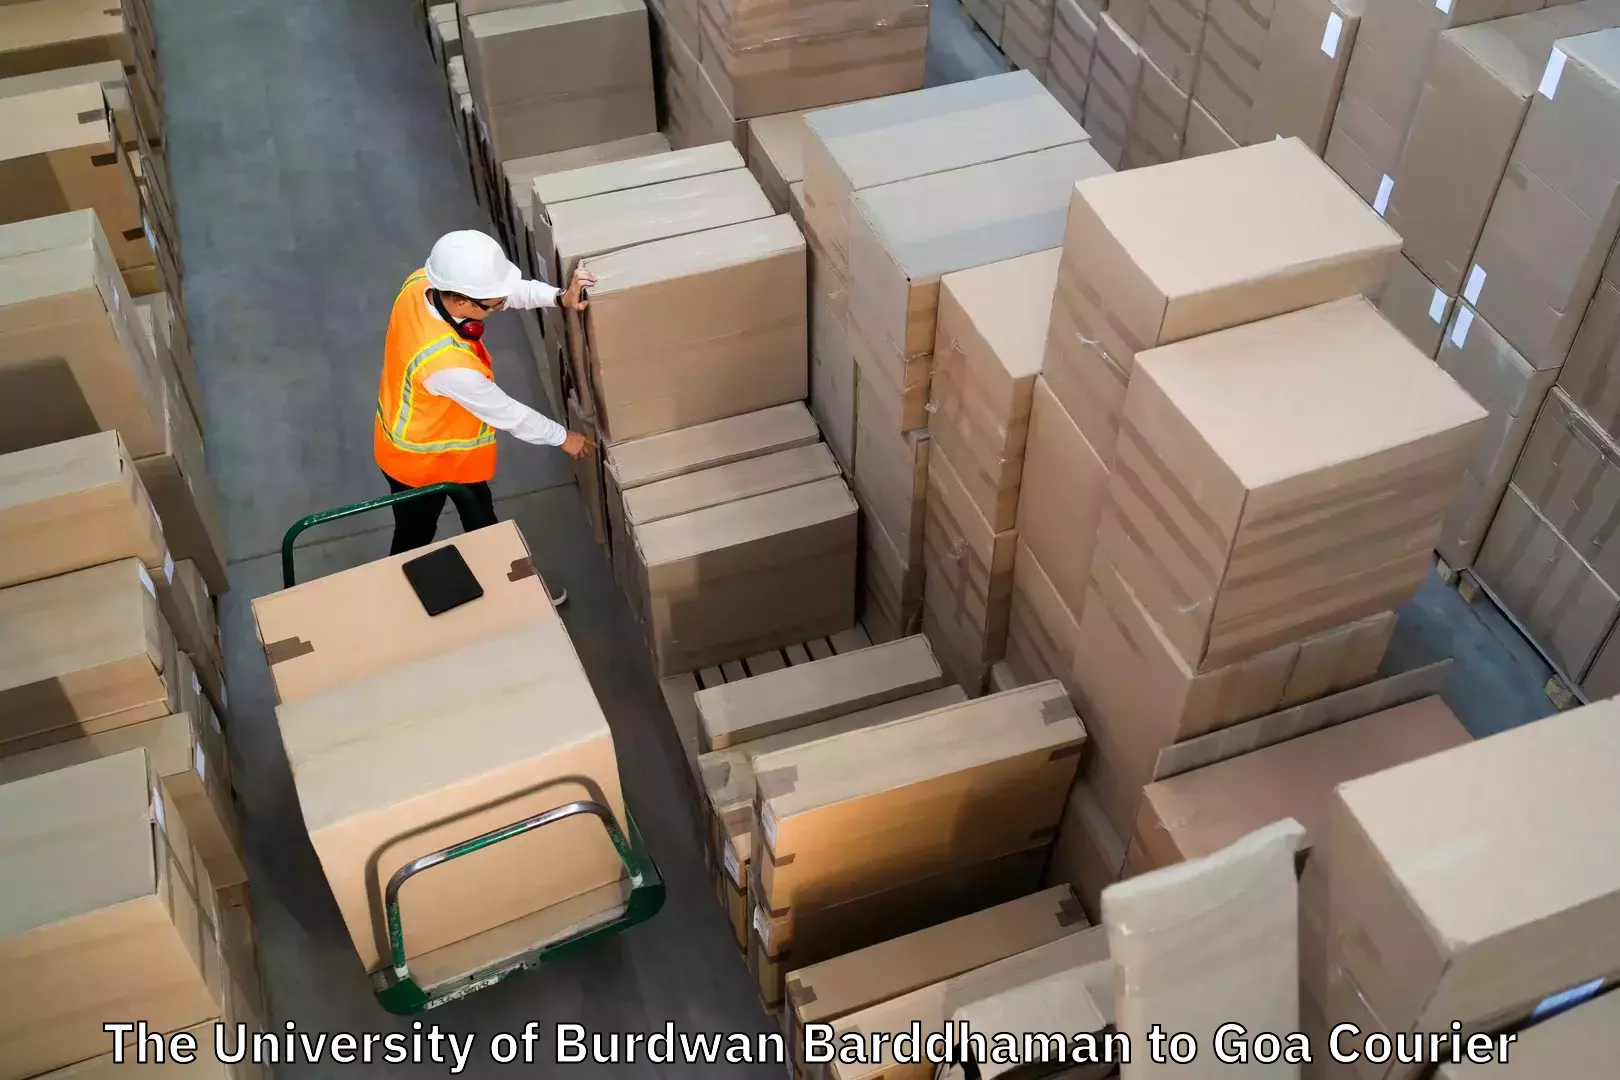 Door-to-door baggage service The University of Burdwan Barddhaman to Ponda